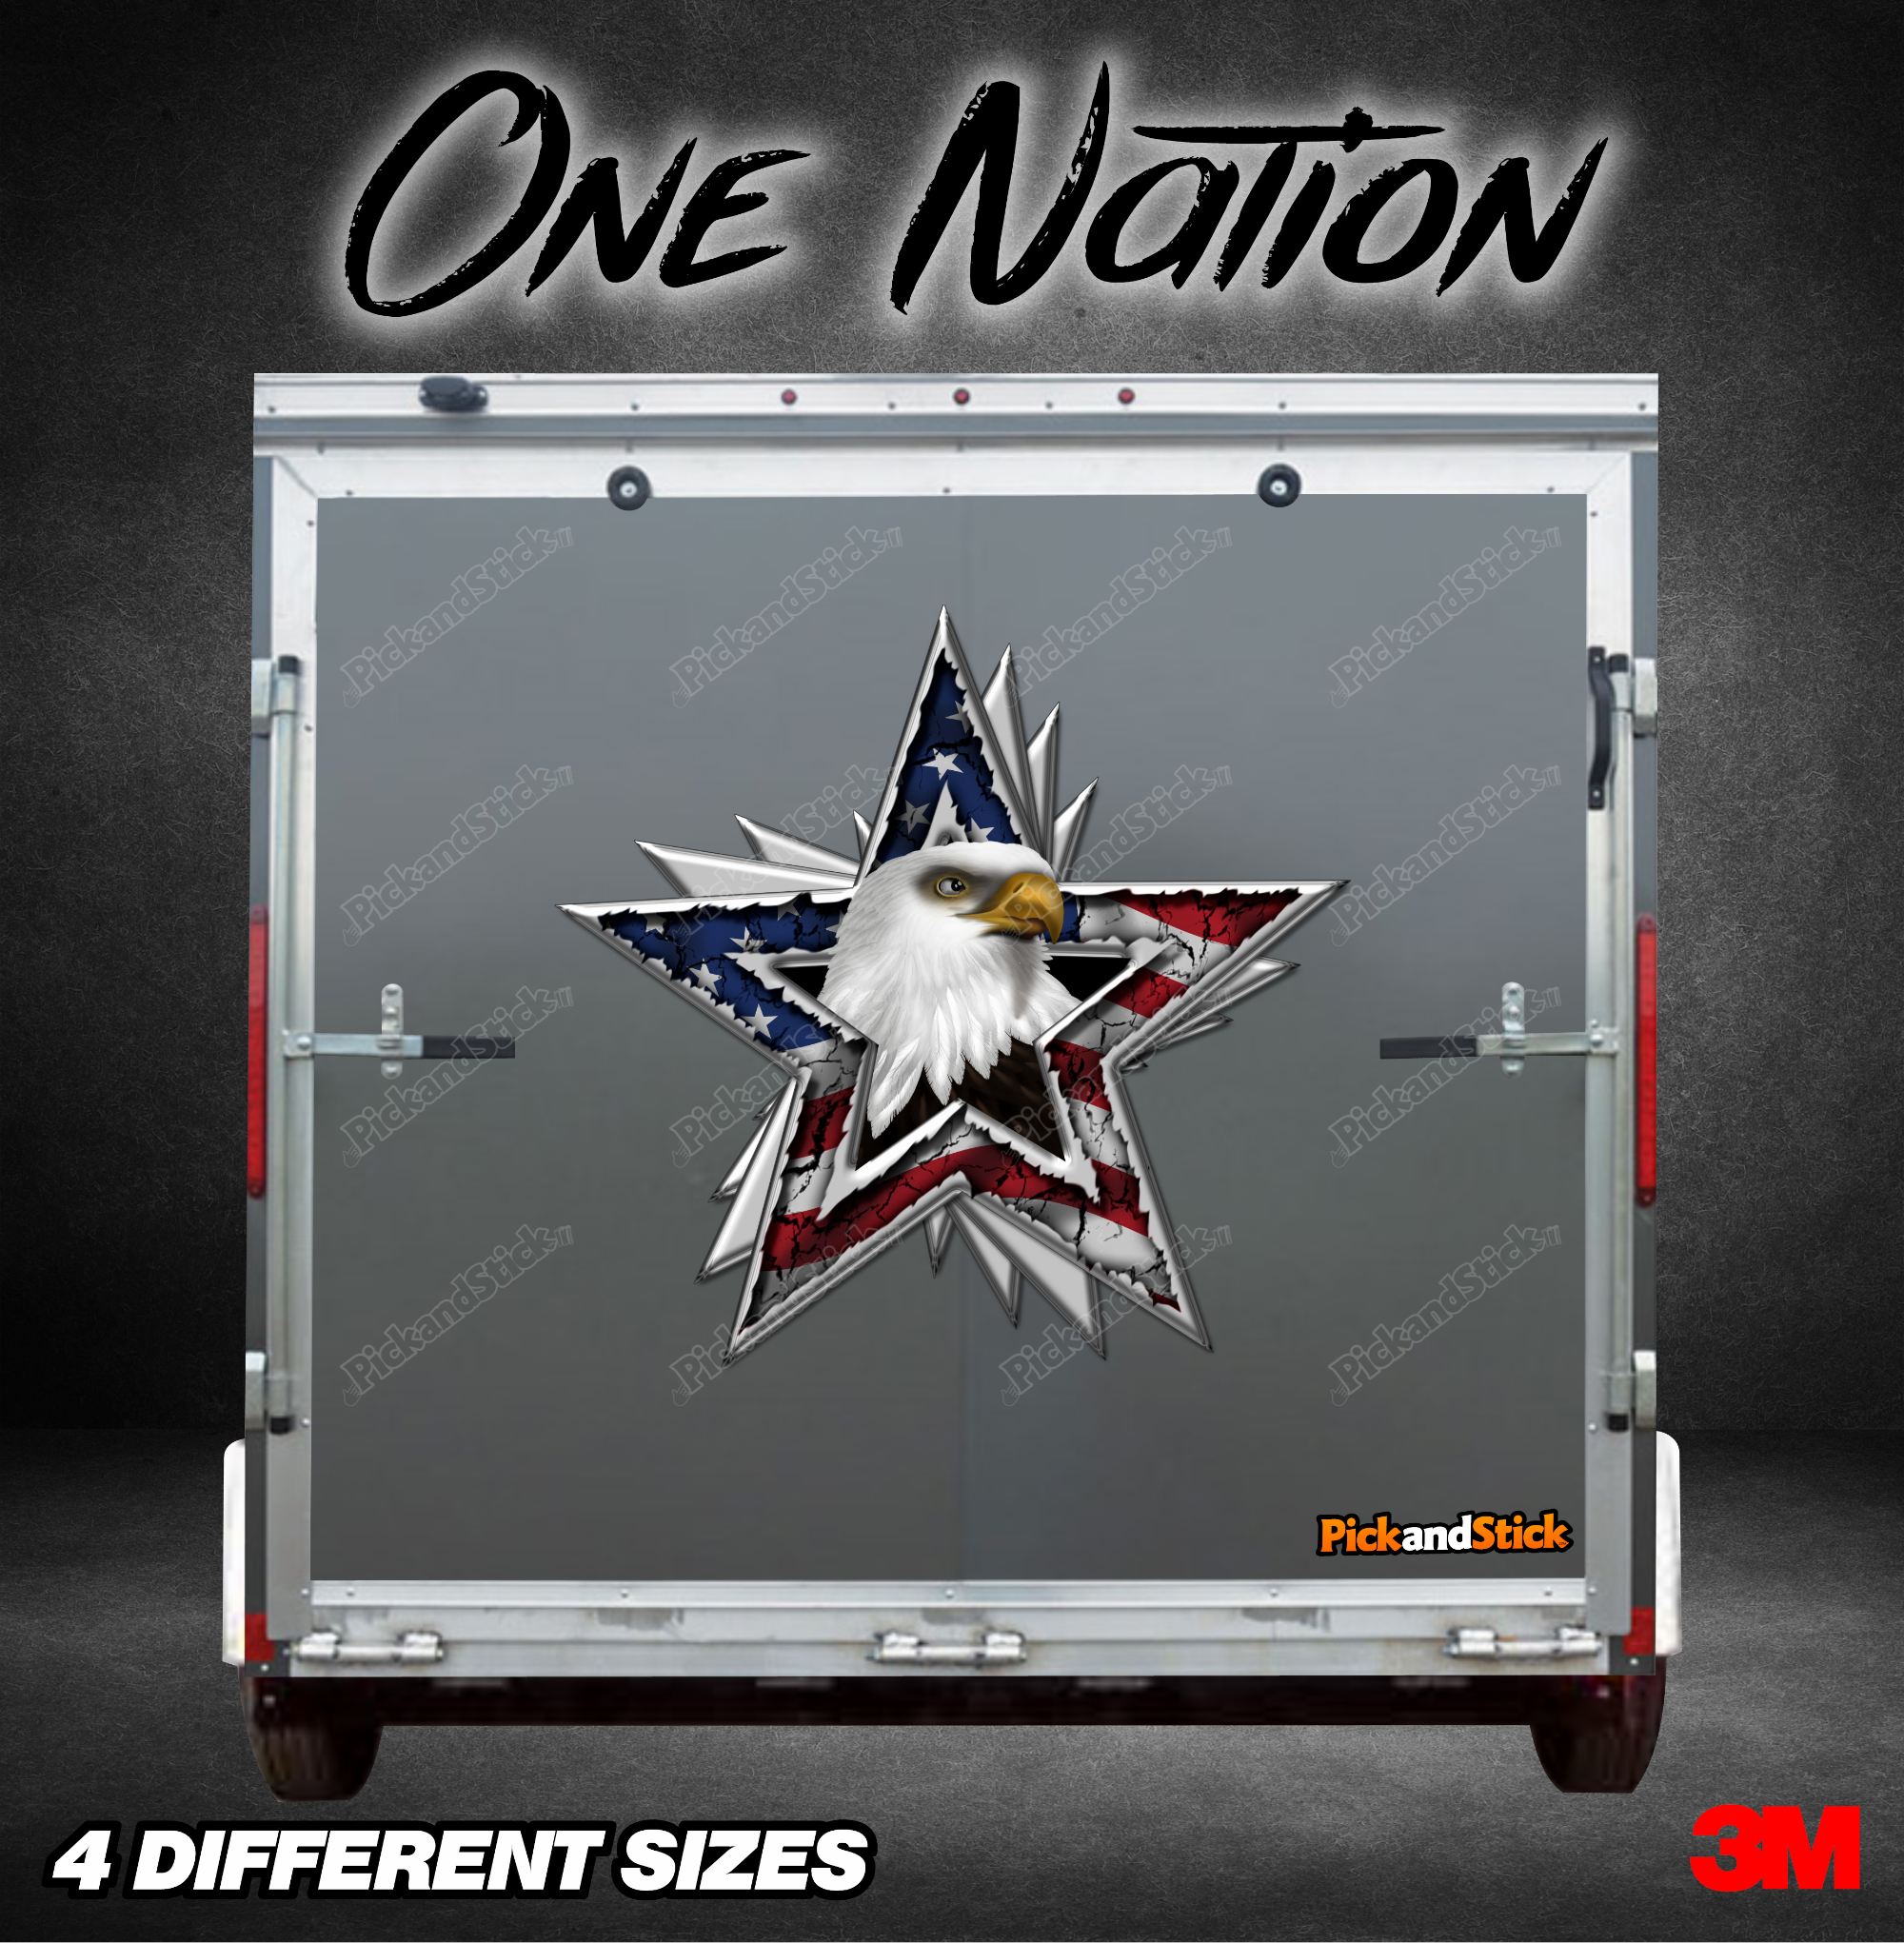 One Nation Graphic - PickandStickcom